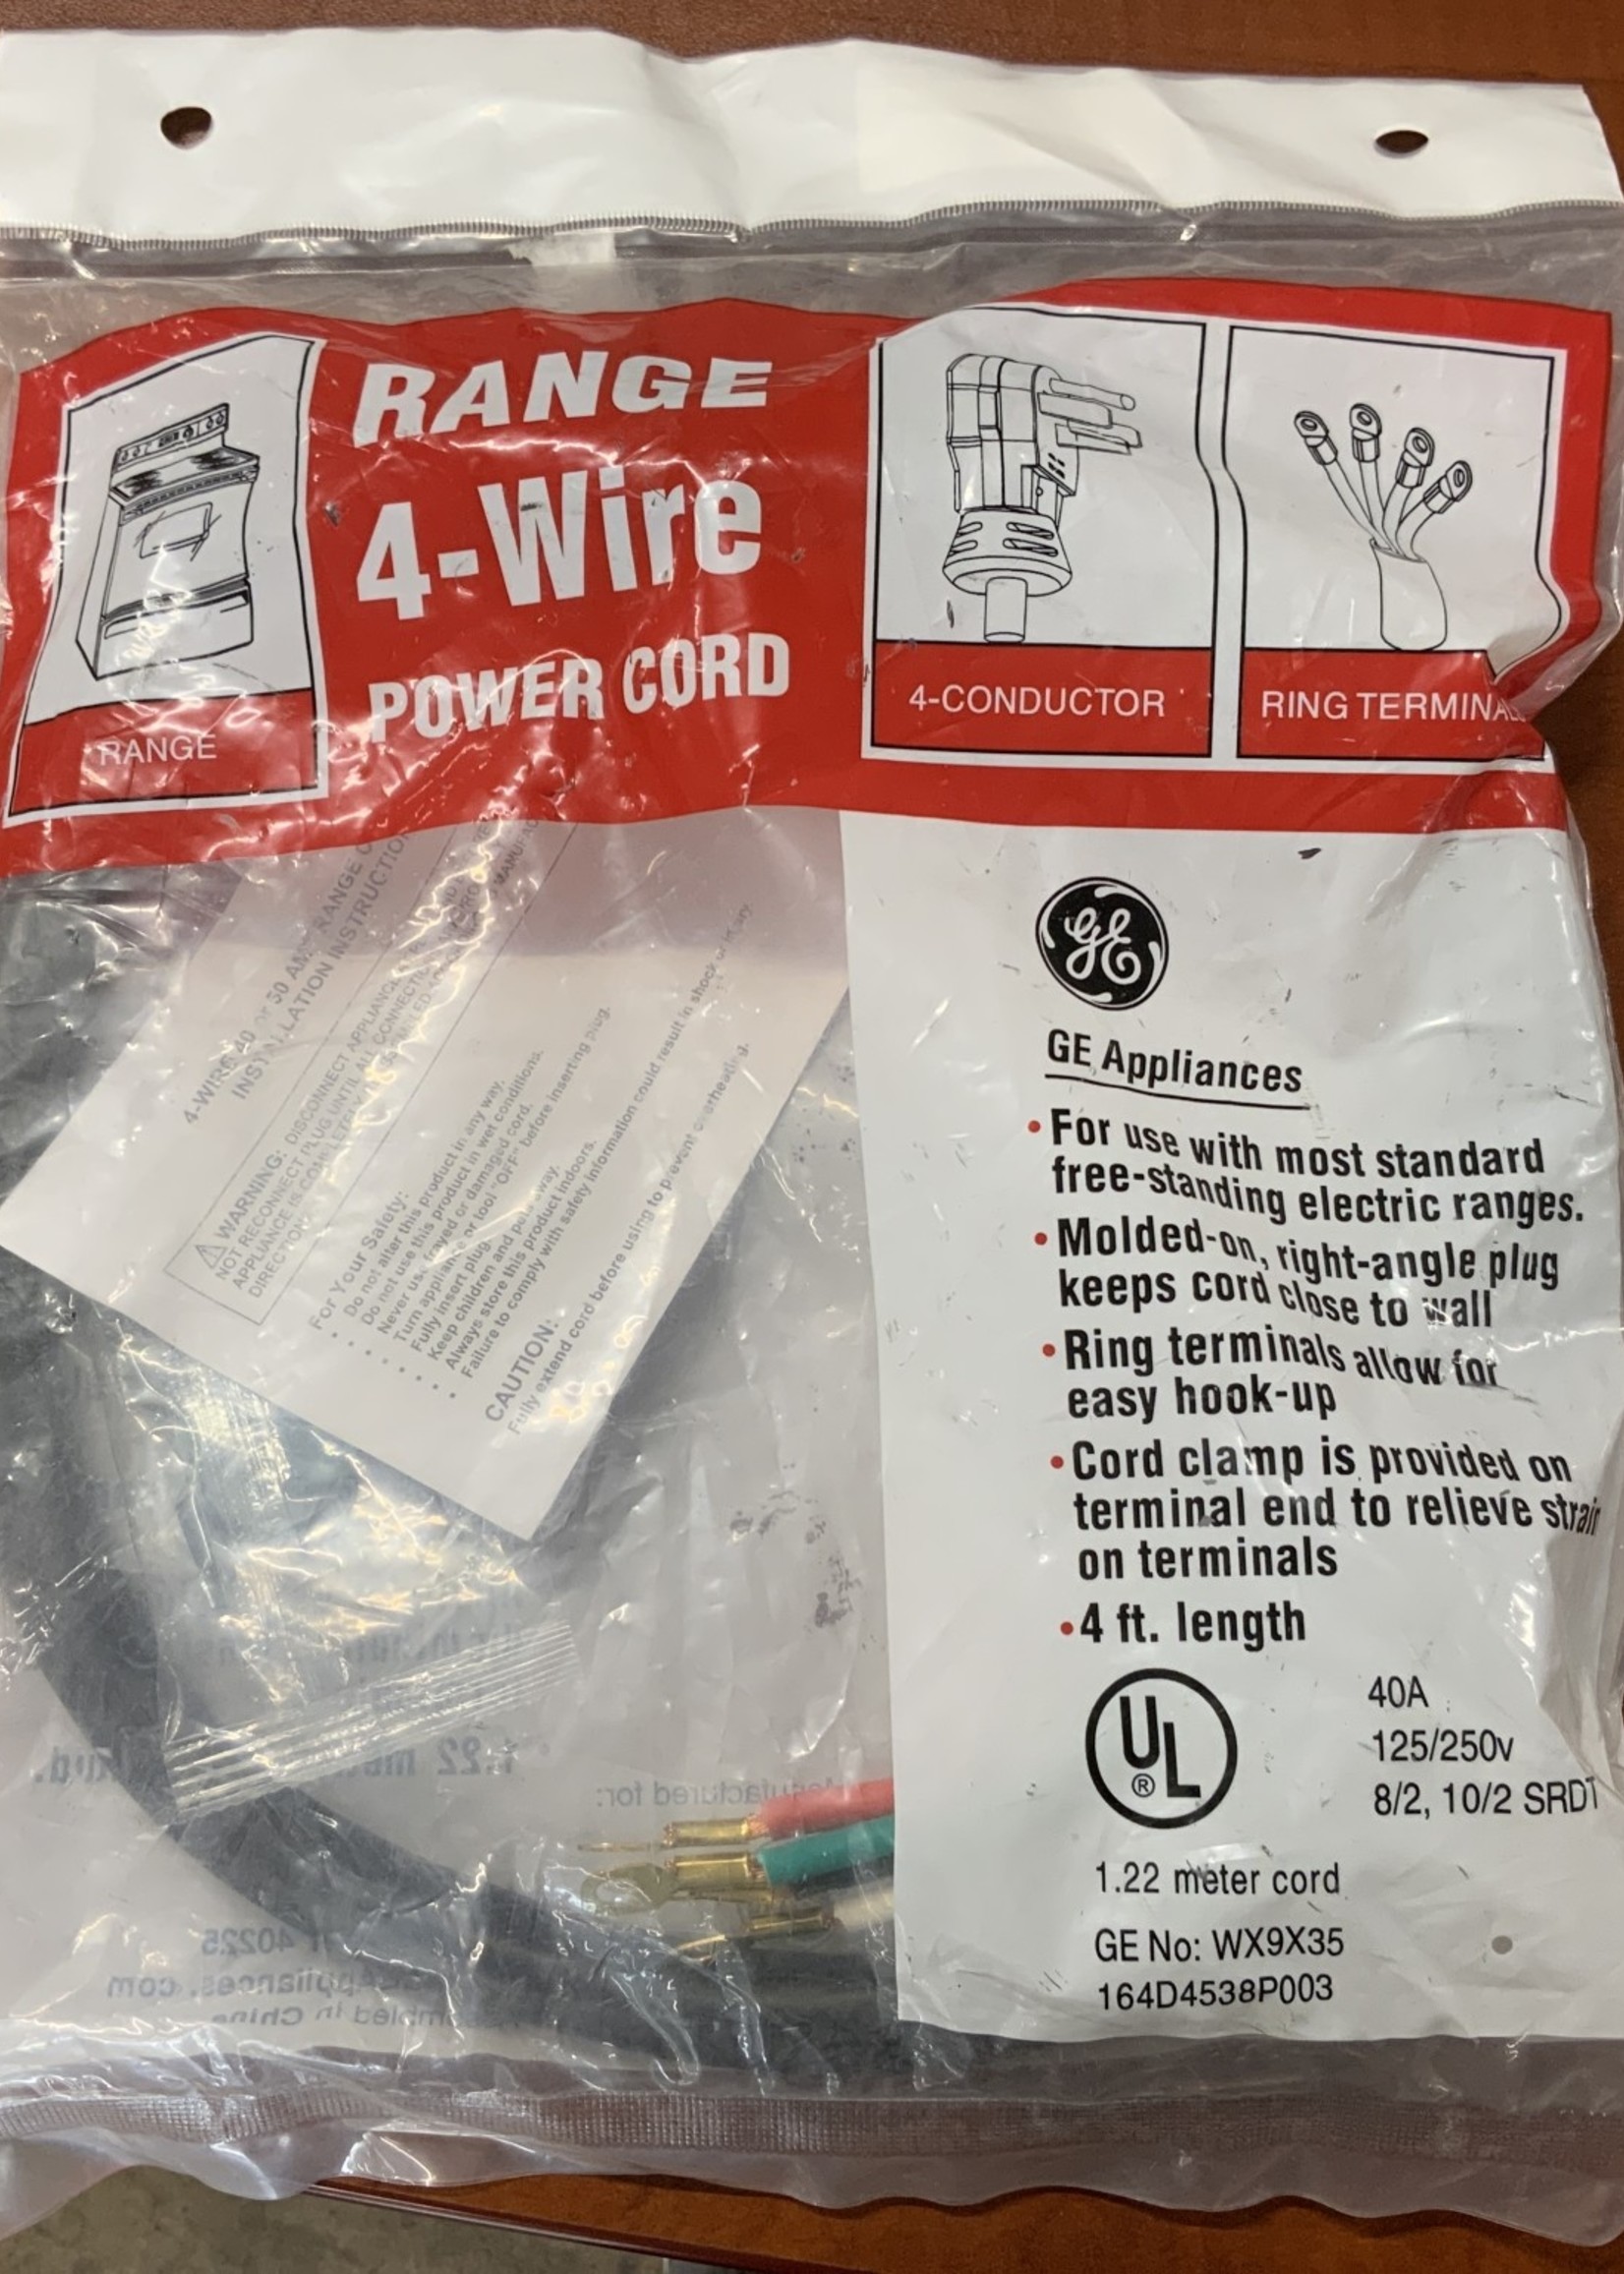 Range Stove power cord